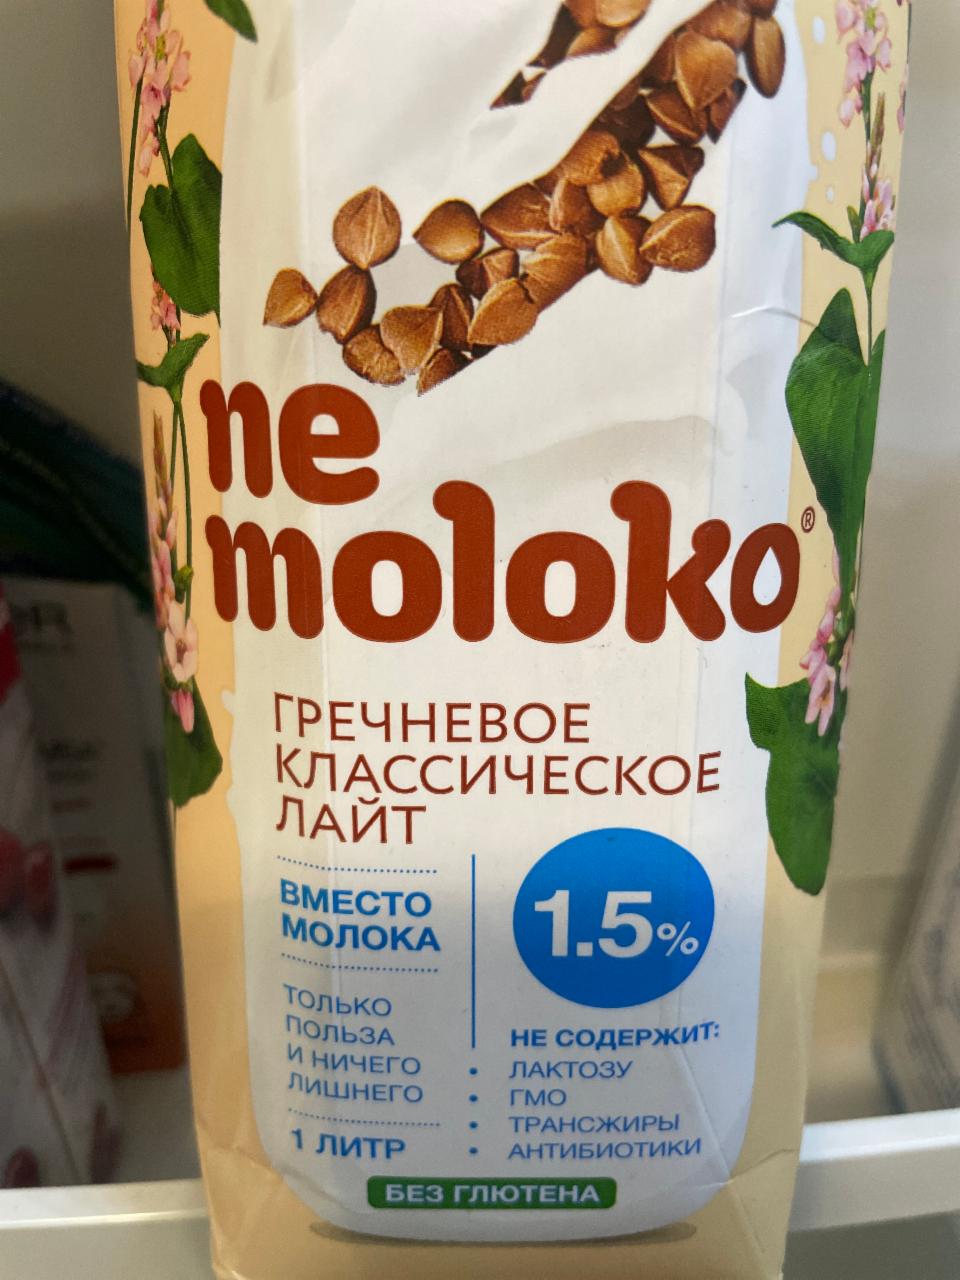 Фото - напиток гречневый классический лайт Ne moloko